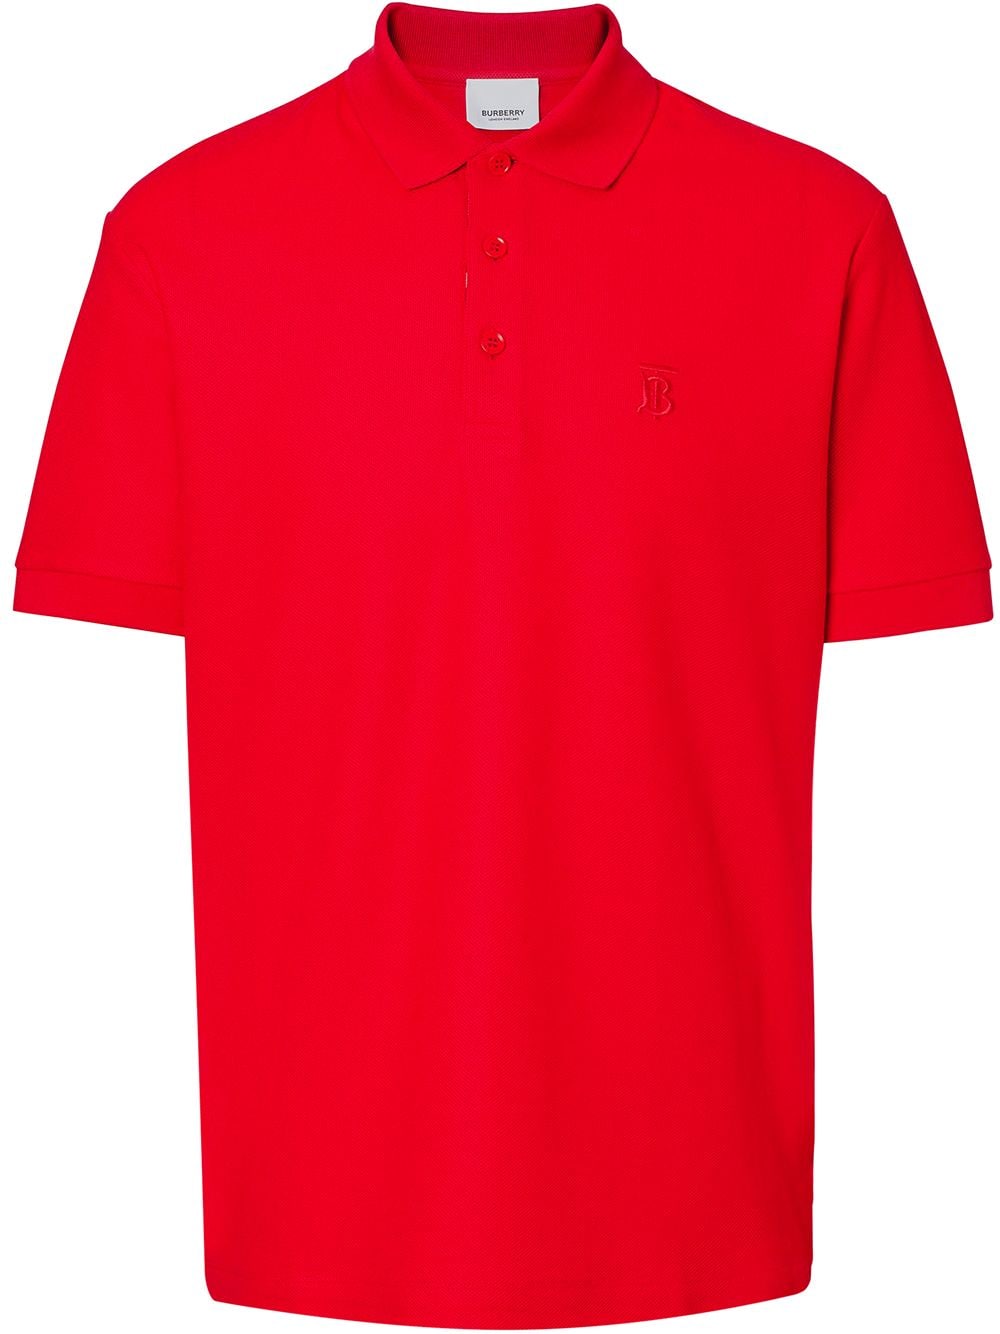 Burberry Poloshirt mit Monogramm - Rot